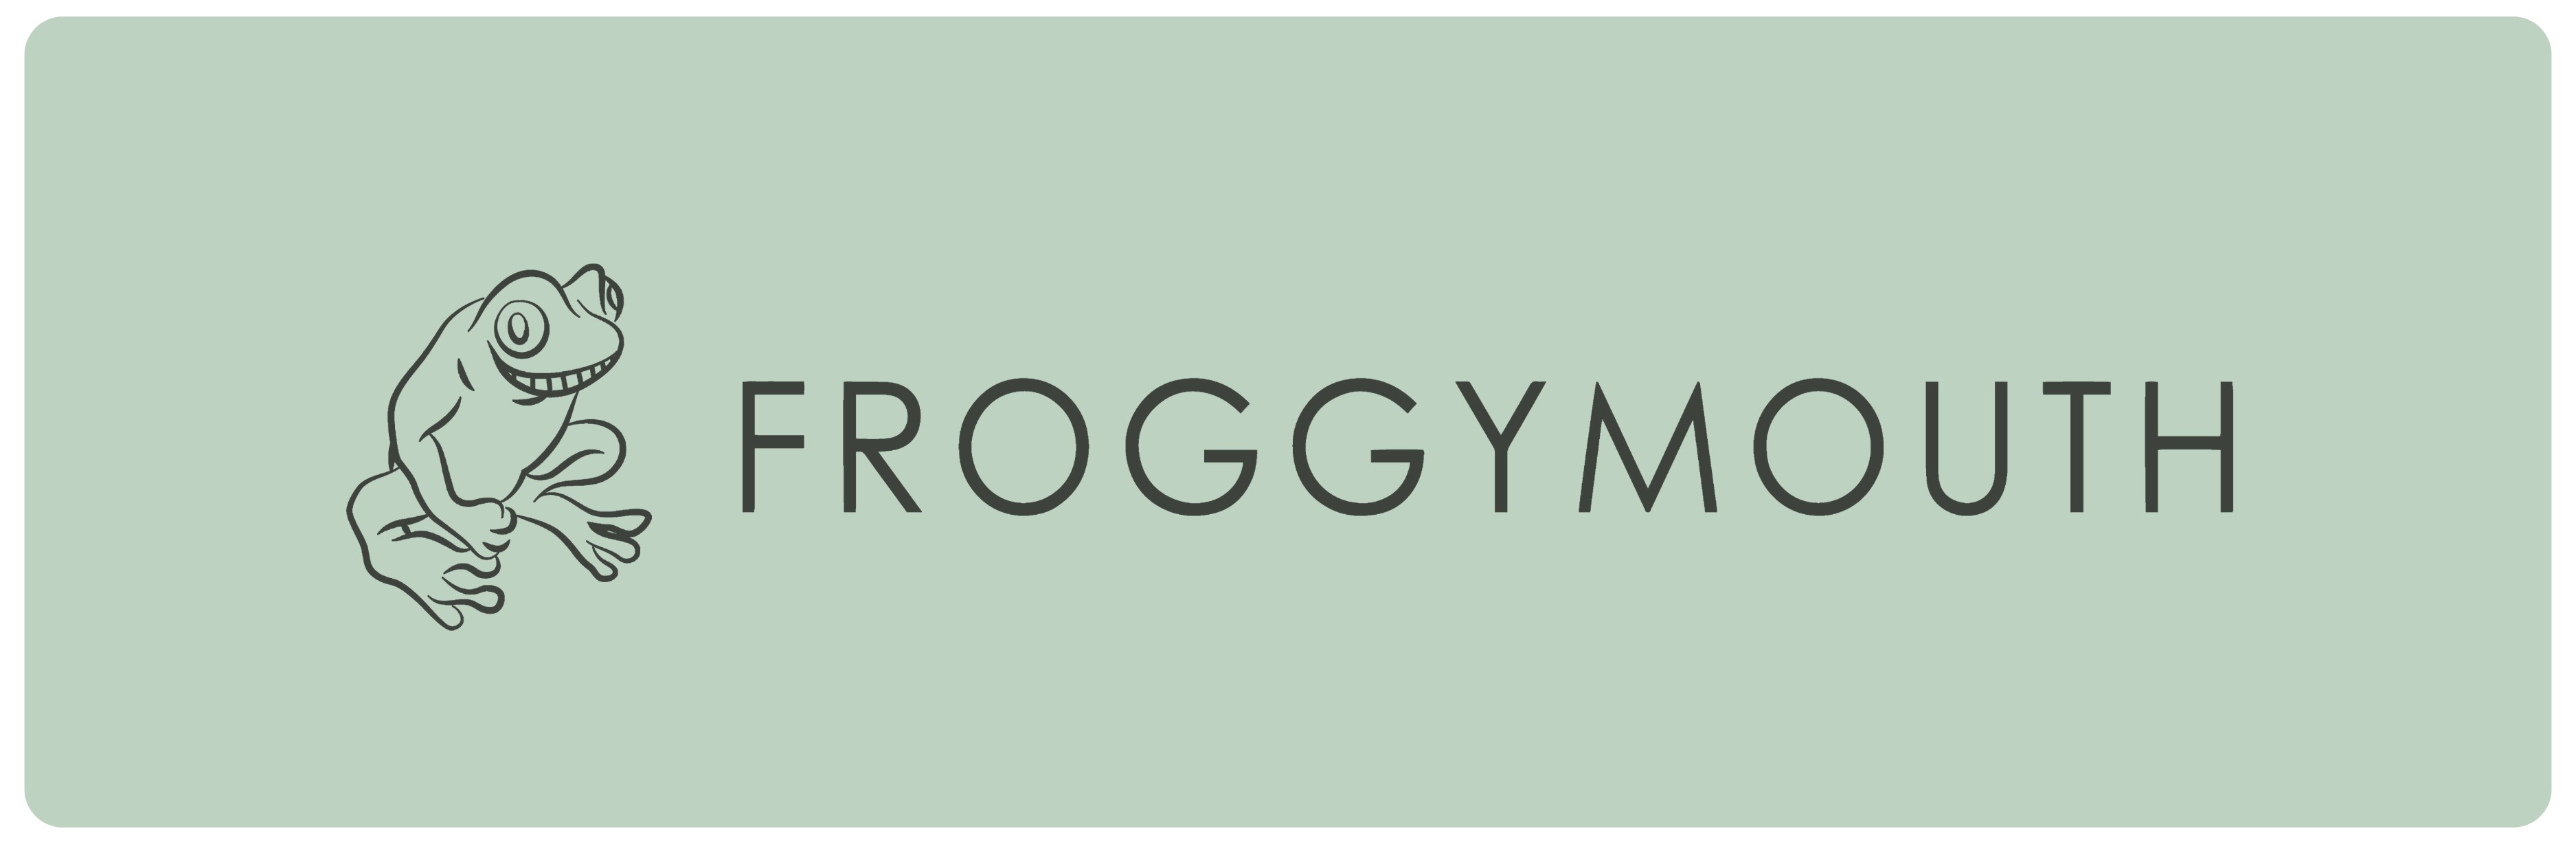 Froggymouth